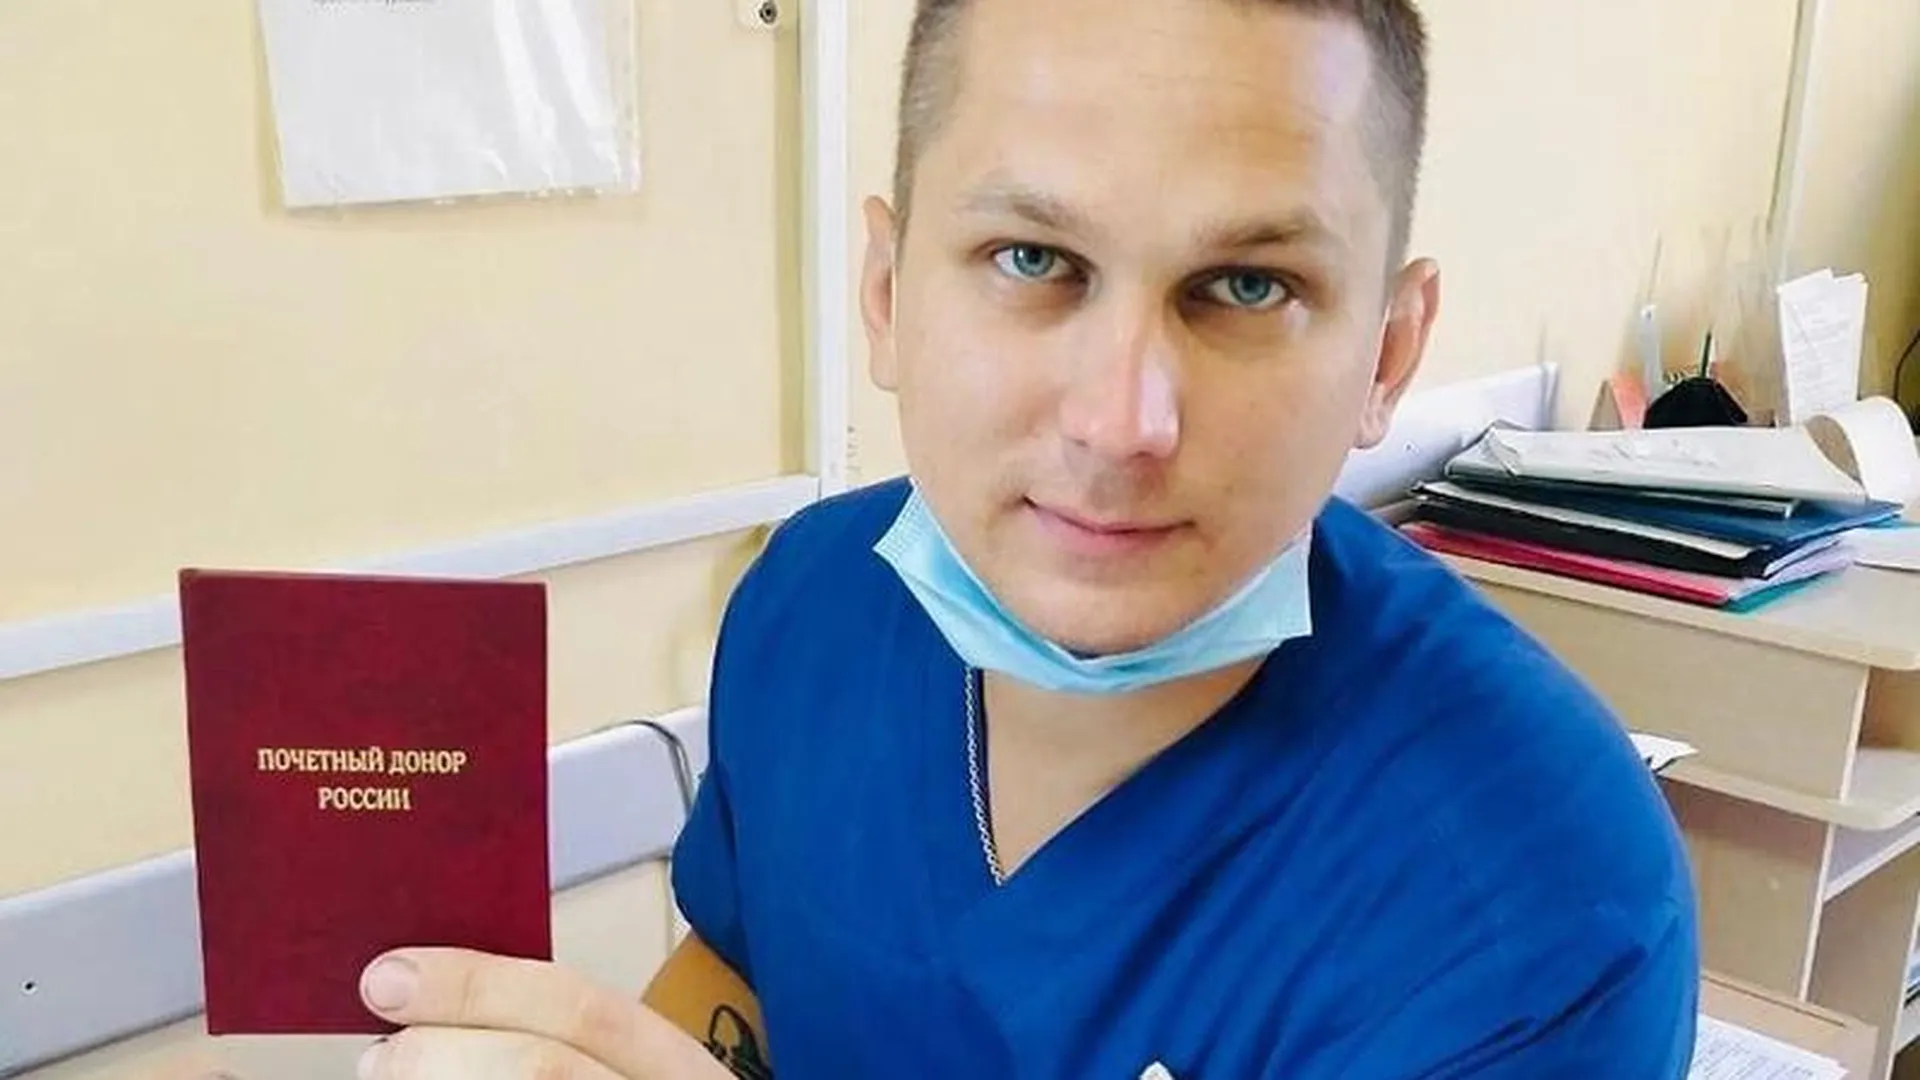 Тридцатилетний медбрат из Подмосковья стал почетным донором России